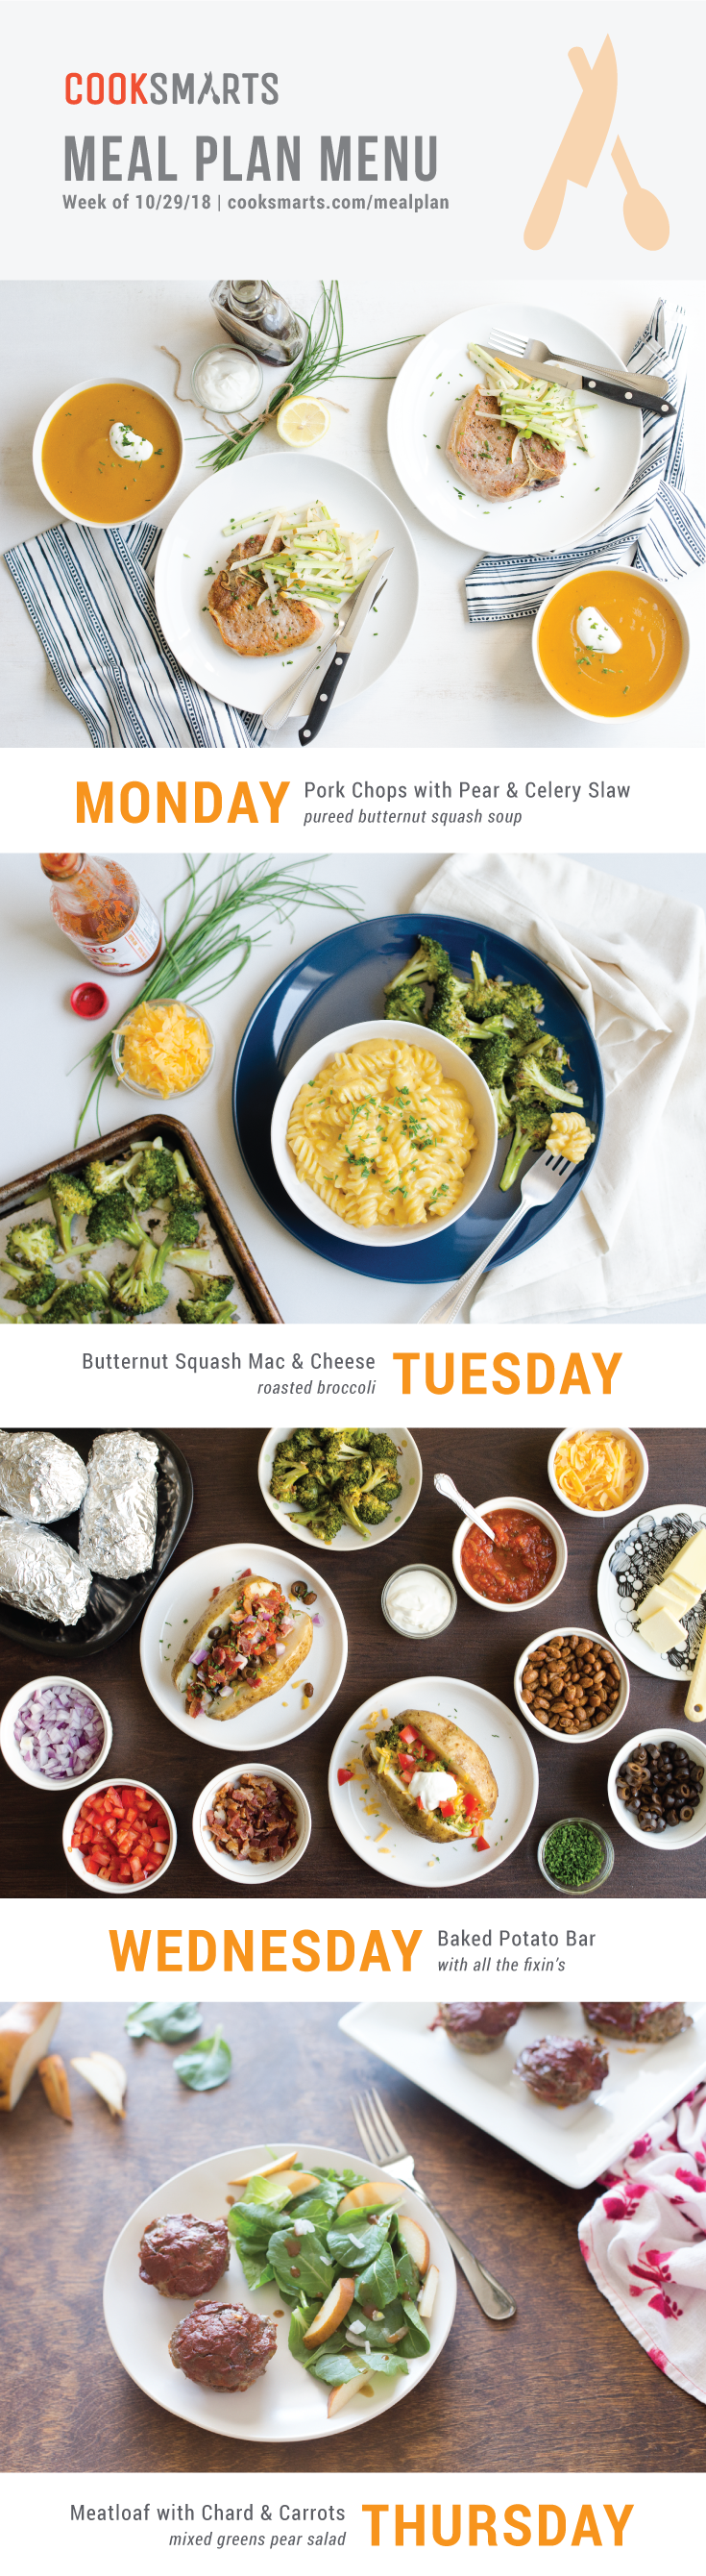 Weekly Meal Planner | Menu for Week of 10/29/18 via Cook Smarts